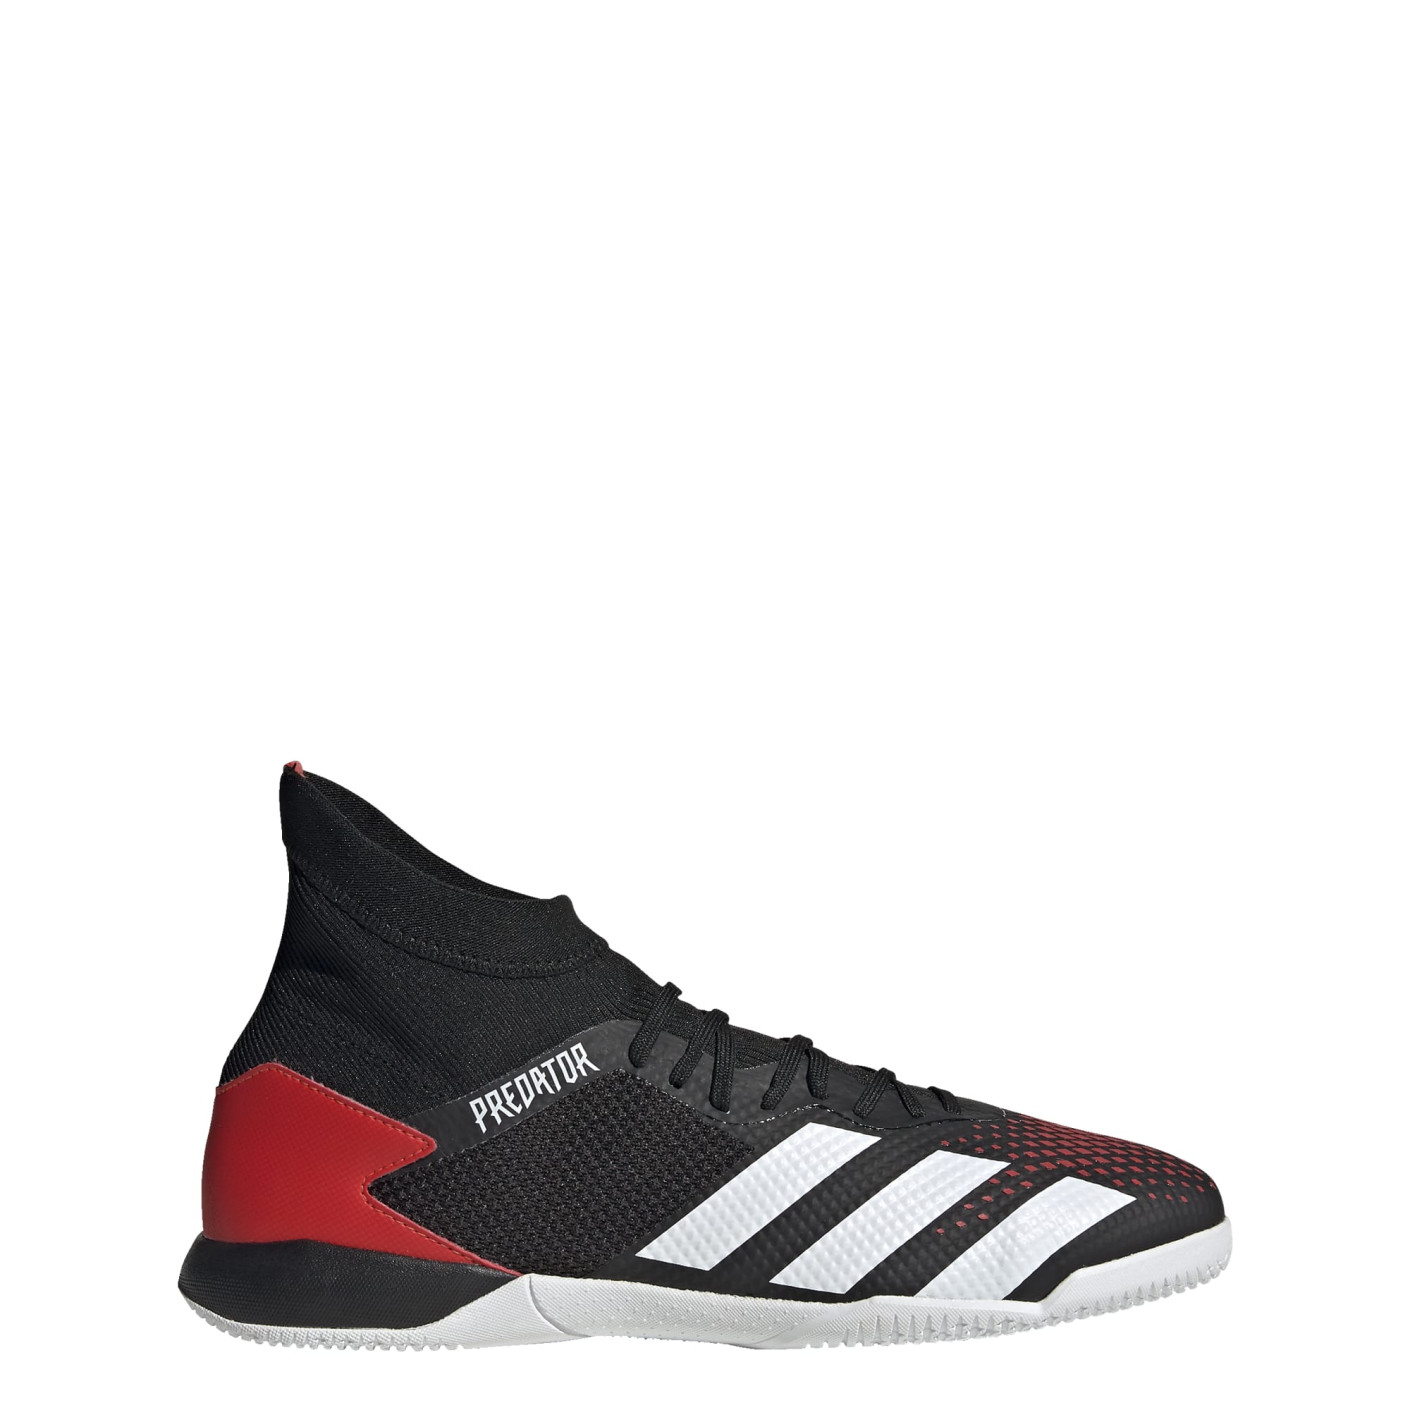 Laan Interactie Recreatie adidas Predator 20.3 Zaalvoetbalschoenen (IN) Zwart Rood Wit